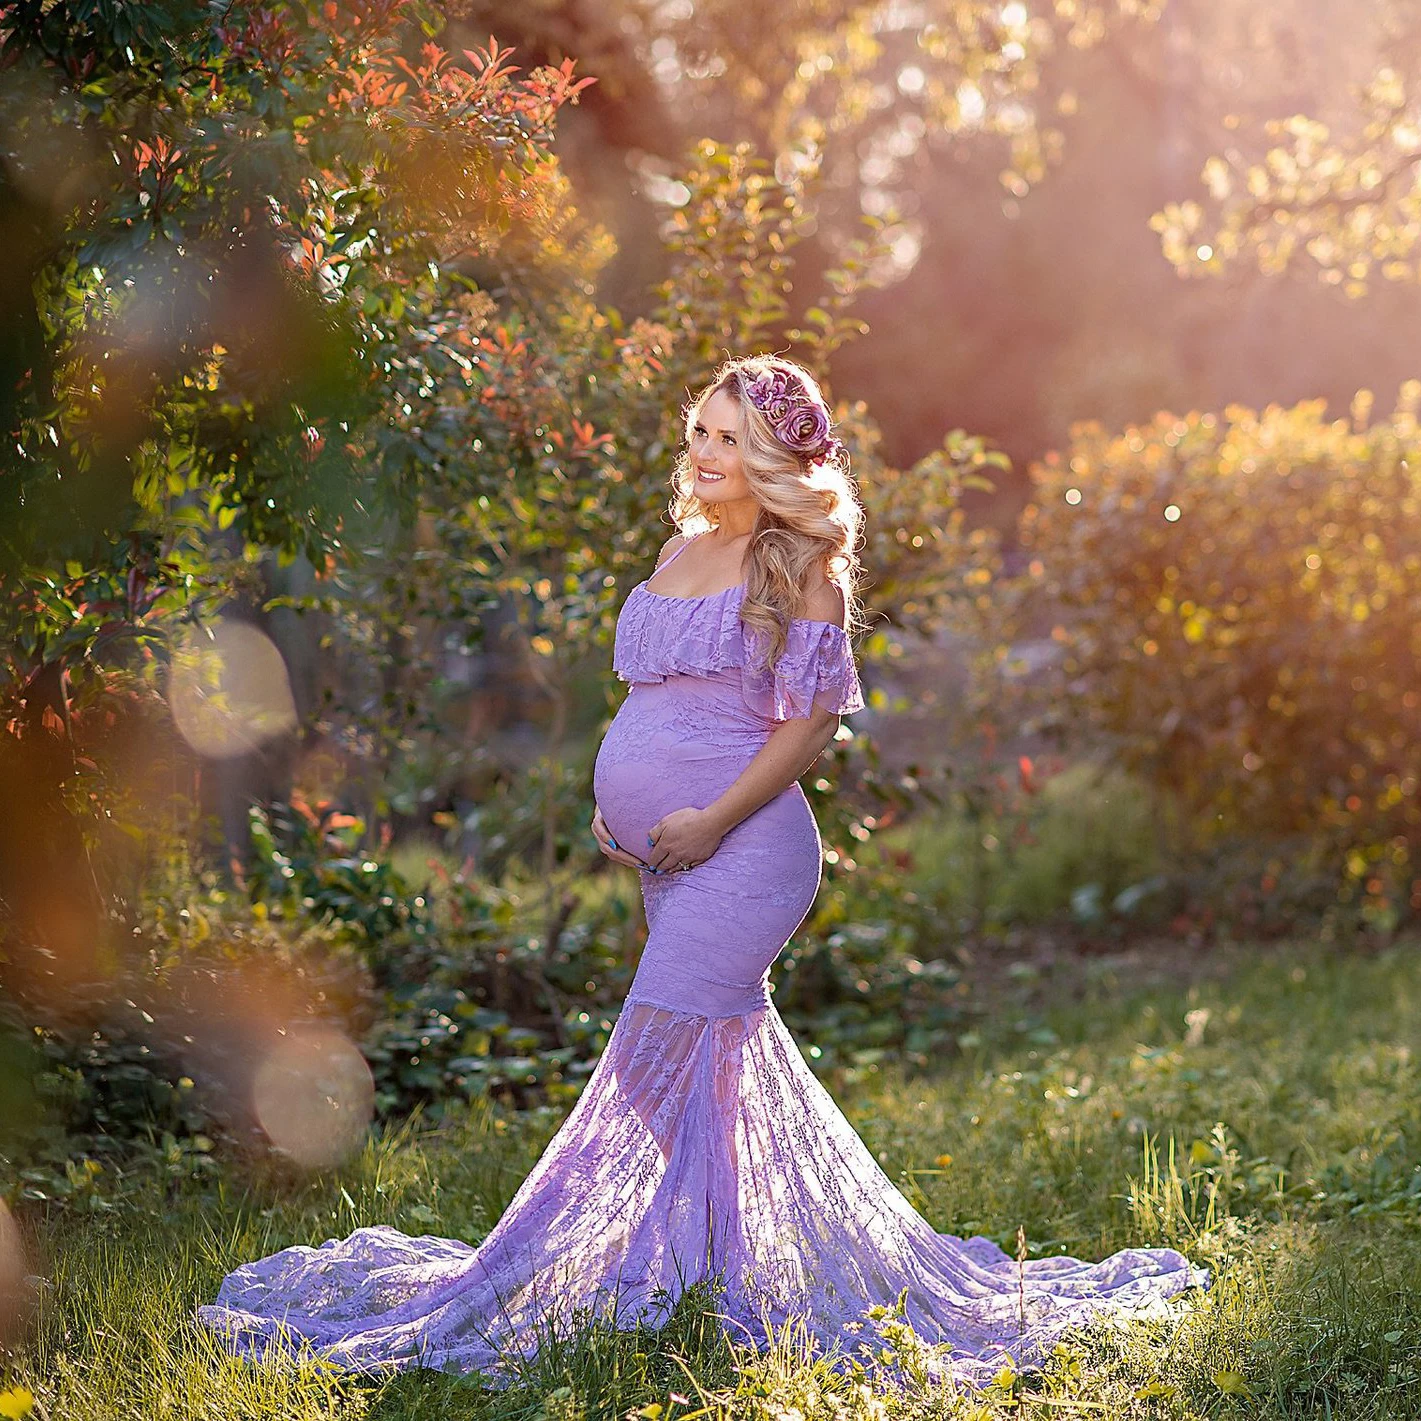 

Stylish Women Maternity Dress Pregnant Lace Tail Photography Maternity Dress Photoshoot